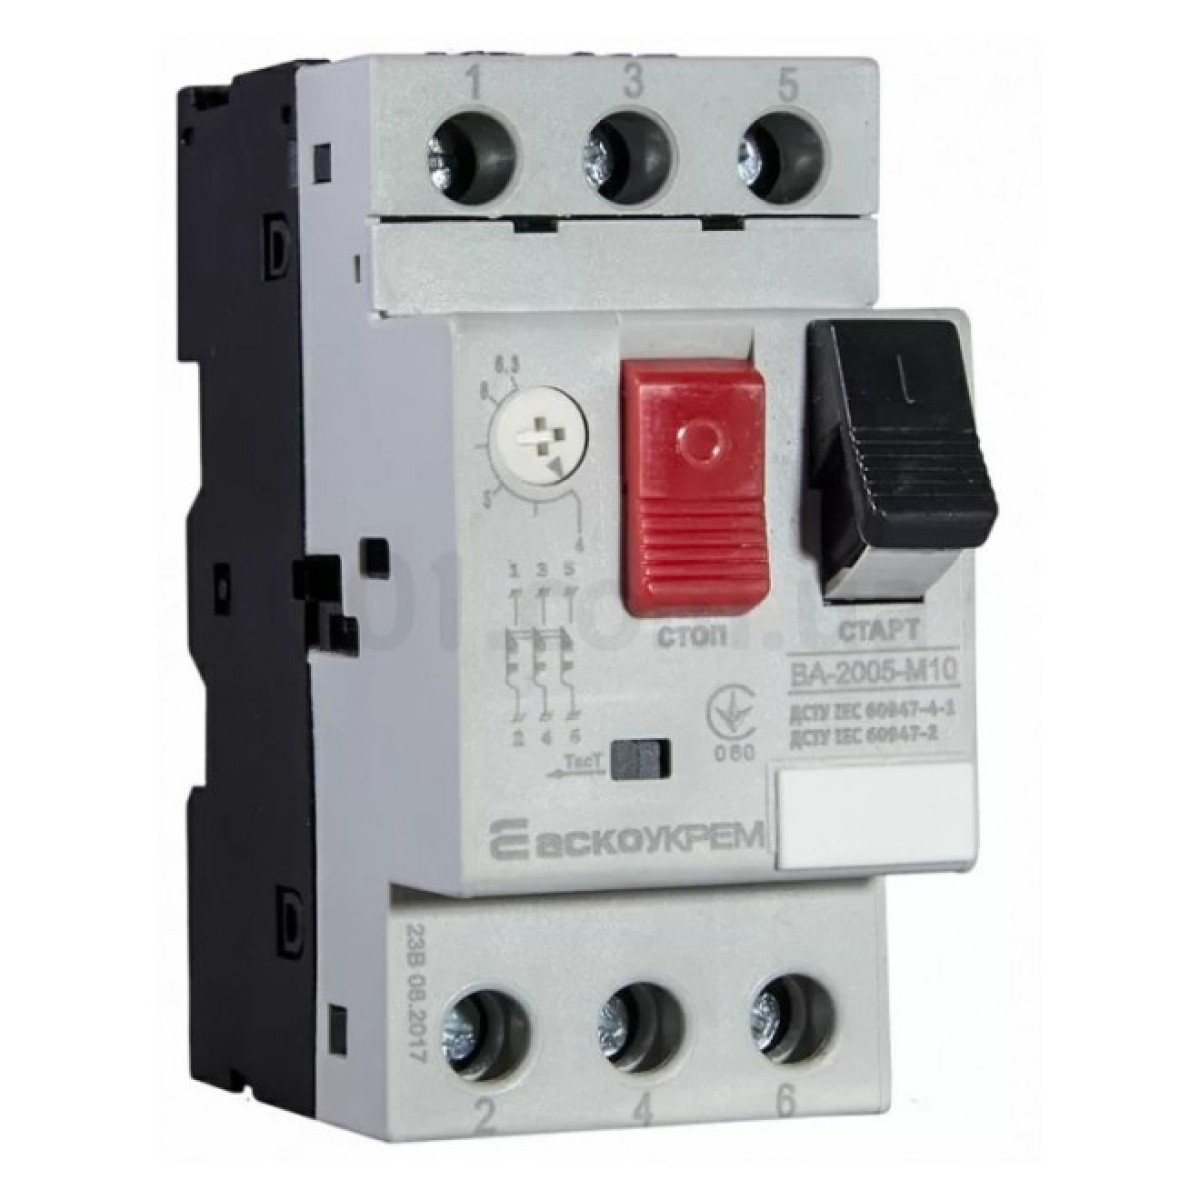 Автоматичний вимикач захисту двигуна ВА-2005 М10 4-6,3А, АСКО-УКРЕМ 256_256.jpg